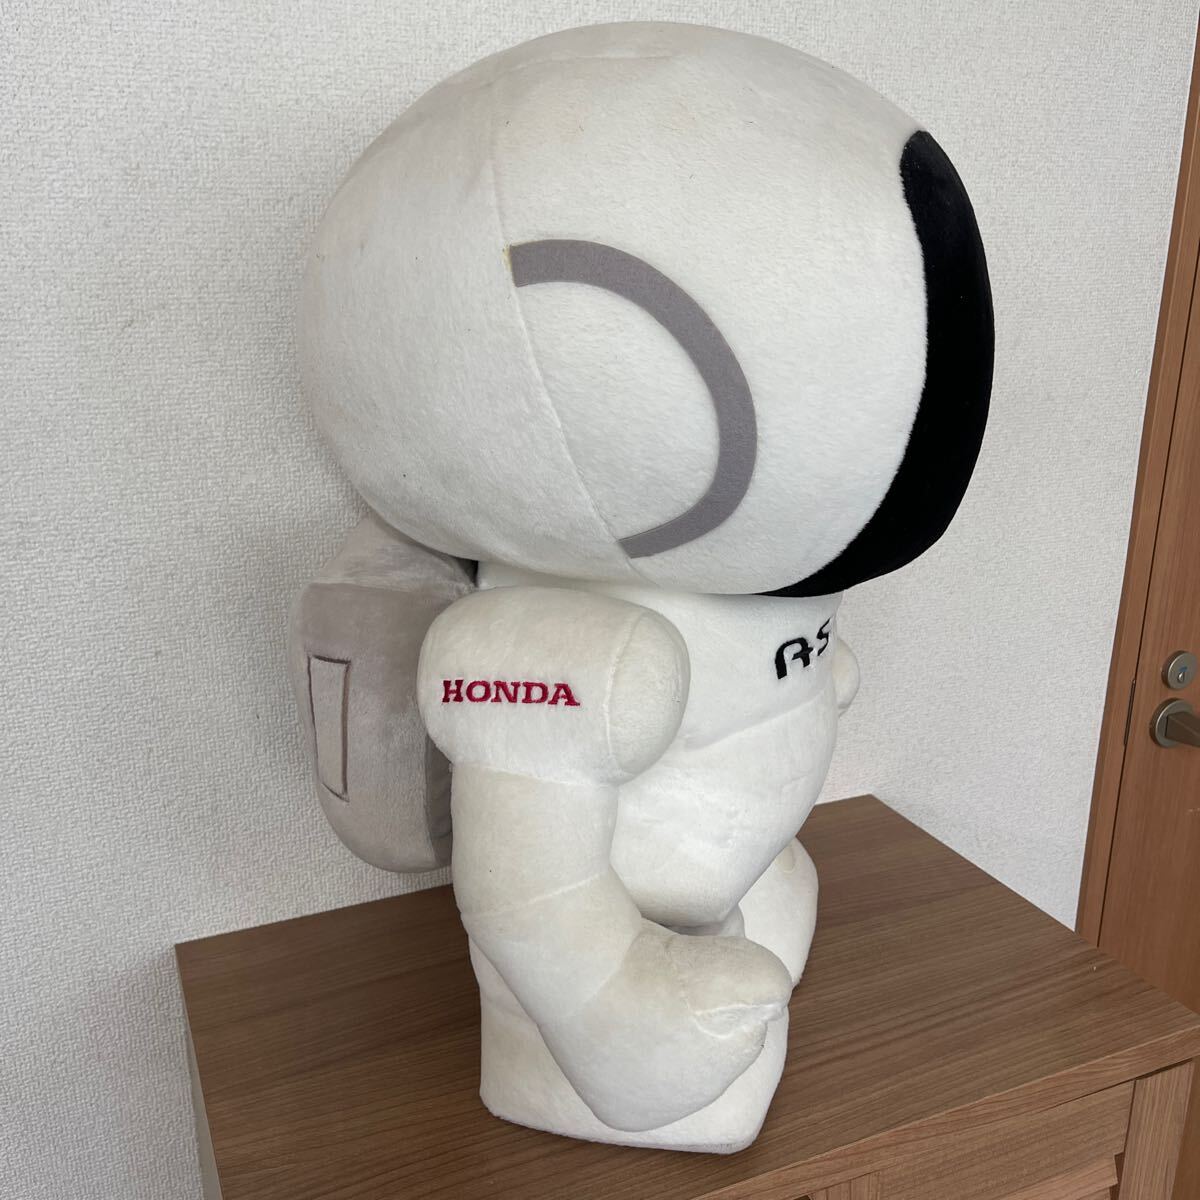 【ASIMO】アシモ/ぬいぐるみ/ブラッシュ/HONDA 本田技研工業/ノベルティー/非売品の画像5